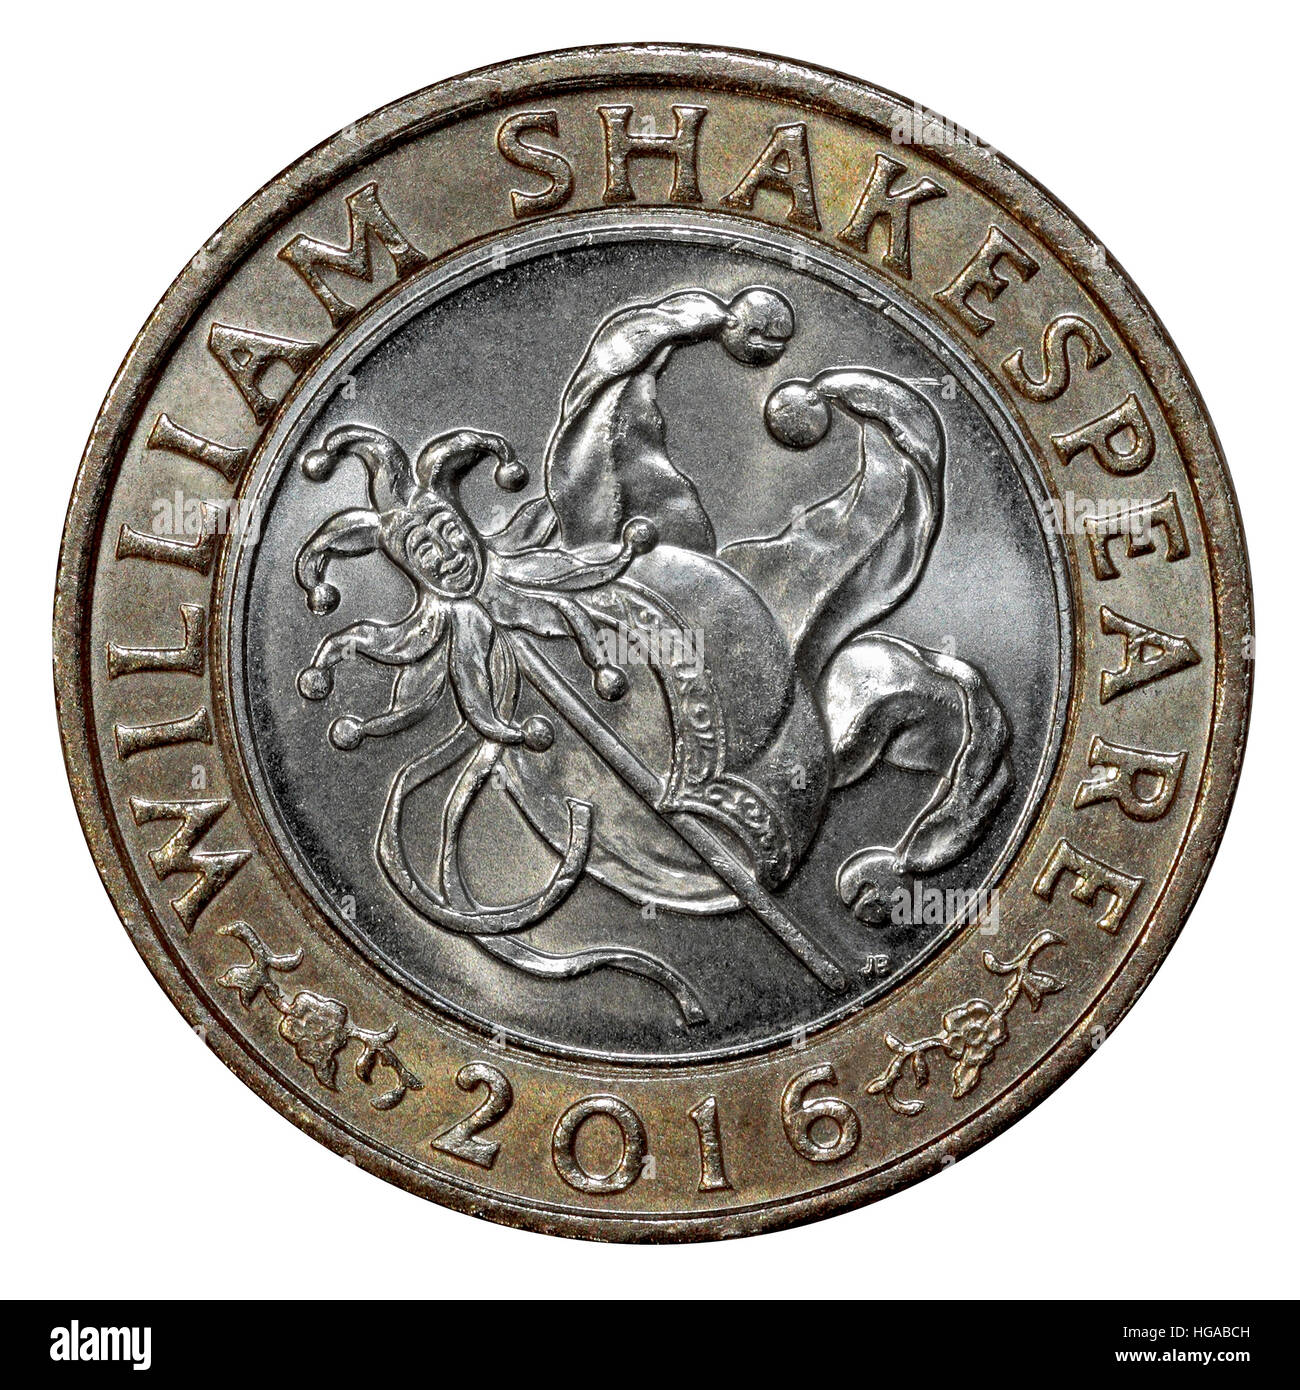 Ein William Shakespeare Gedenkausgabe 2016 £2 Münze Tails Seite Narr Stockfoto